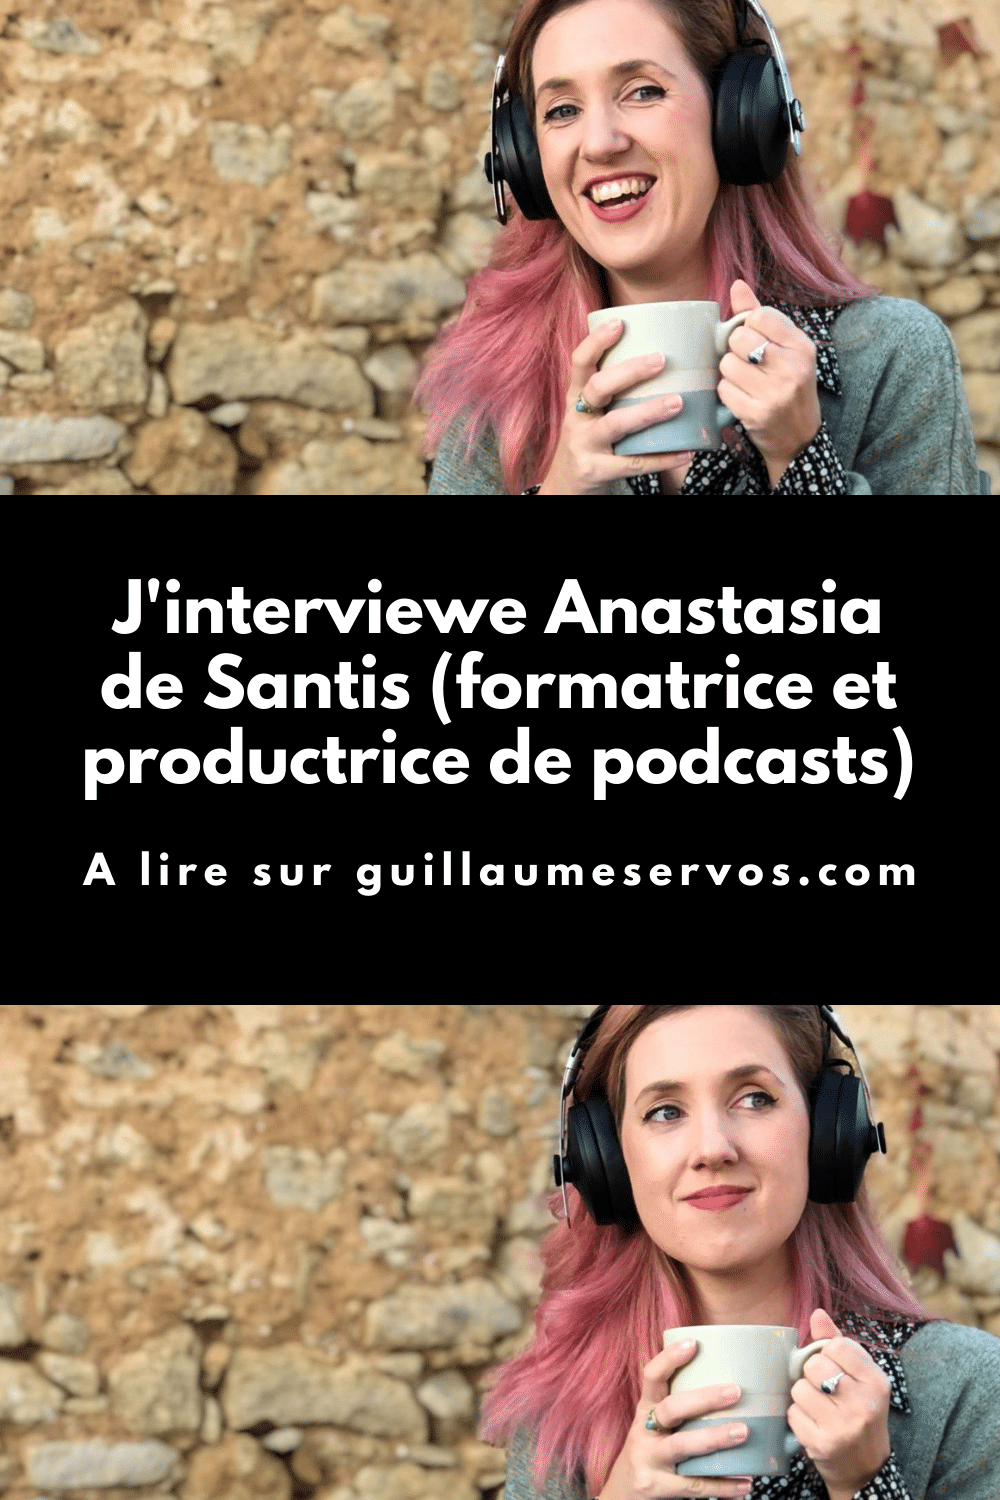 Découvre mon interview avec Anastasia de Santis, formatrice et productrice de podcasts. Au menu : freelancing, podcasting, réseaux sociaux, voyage…